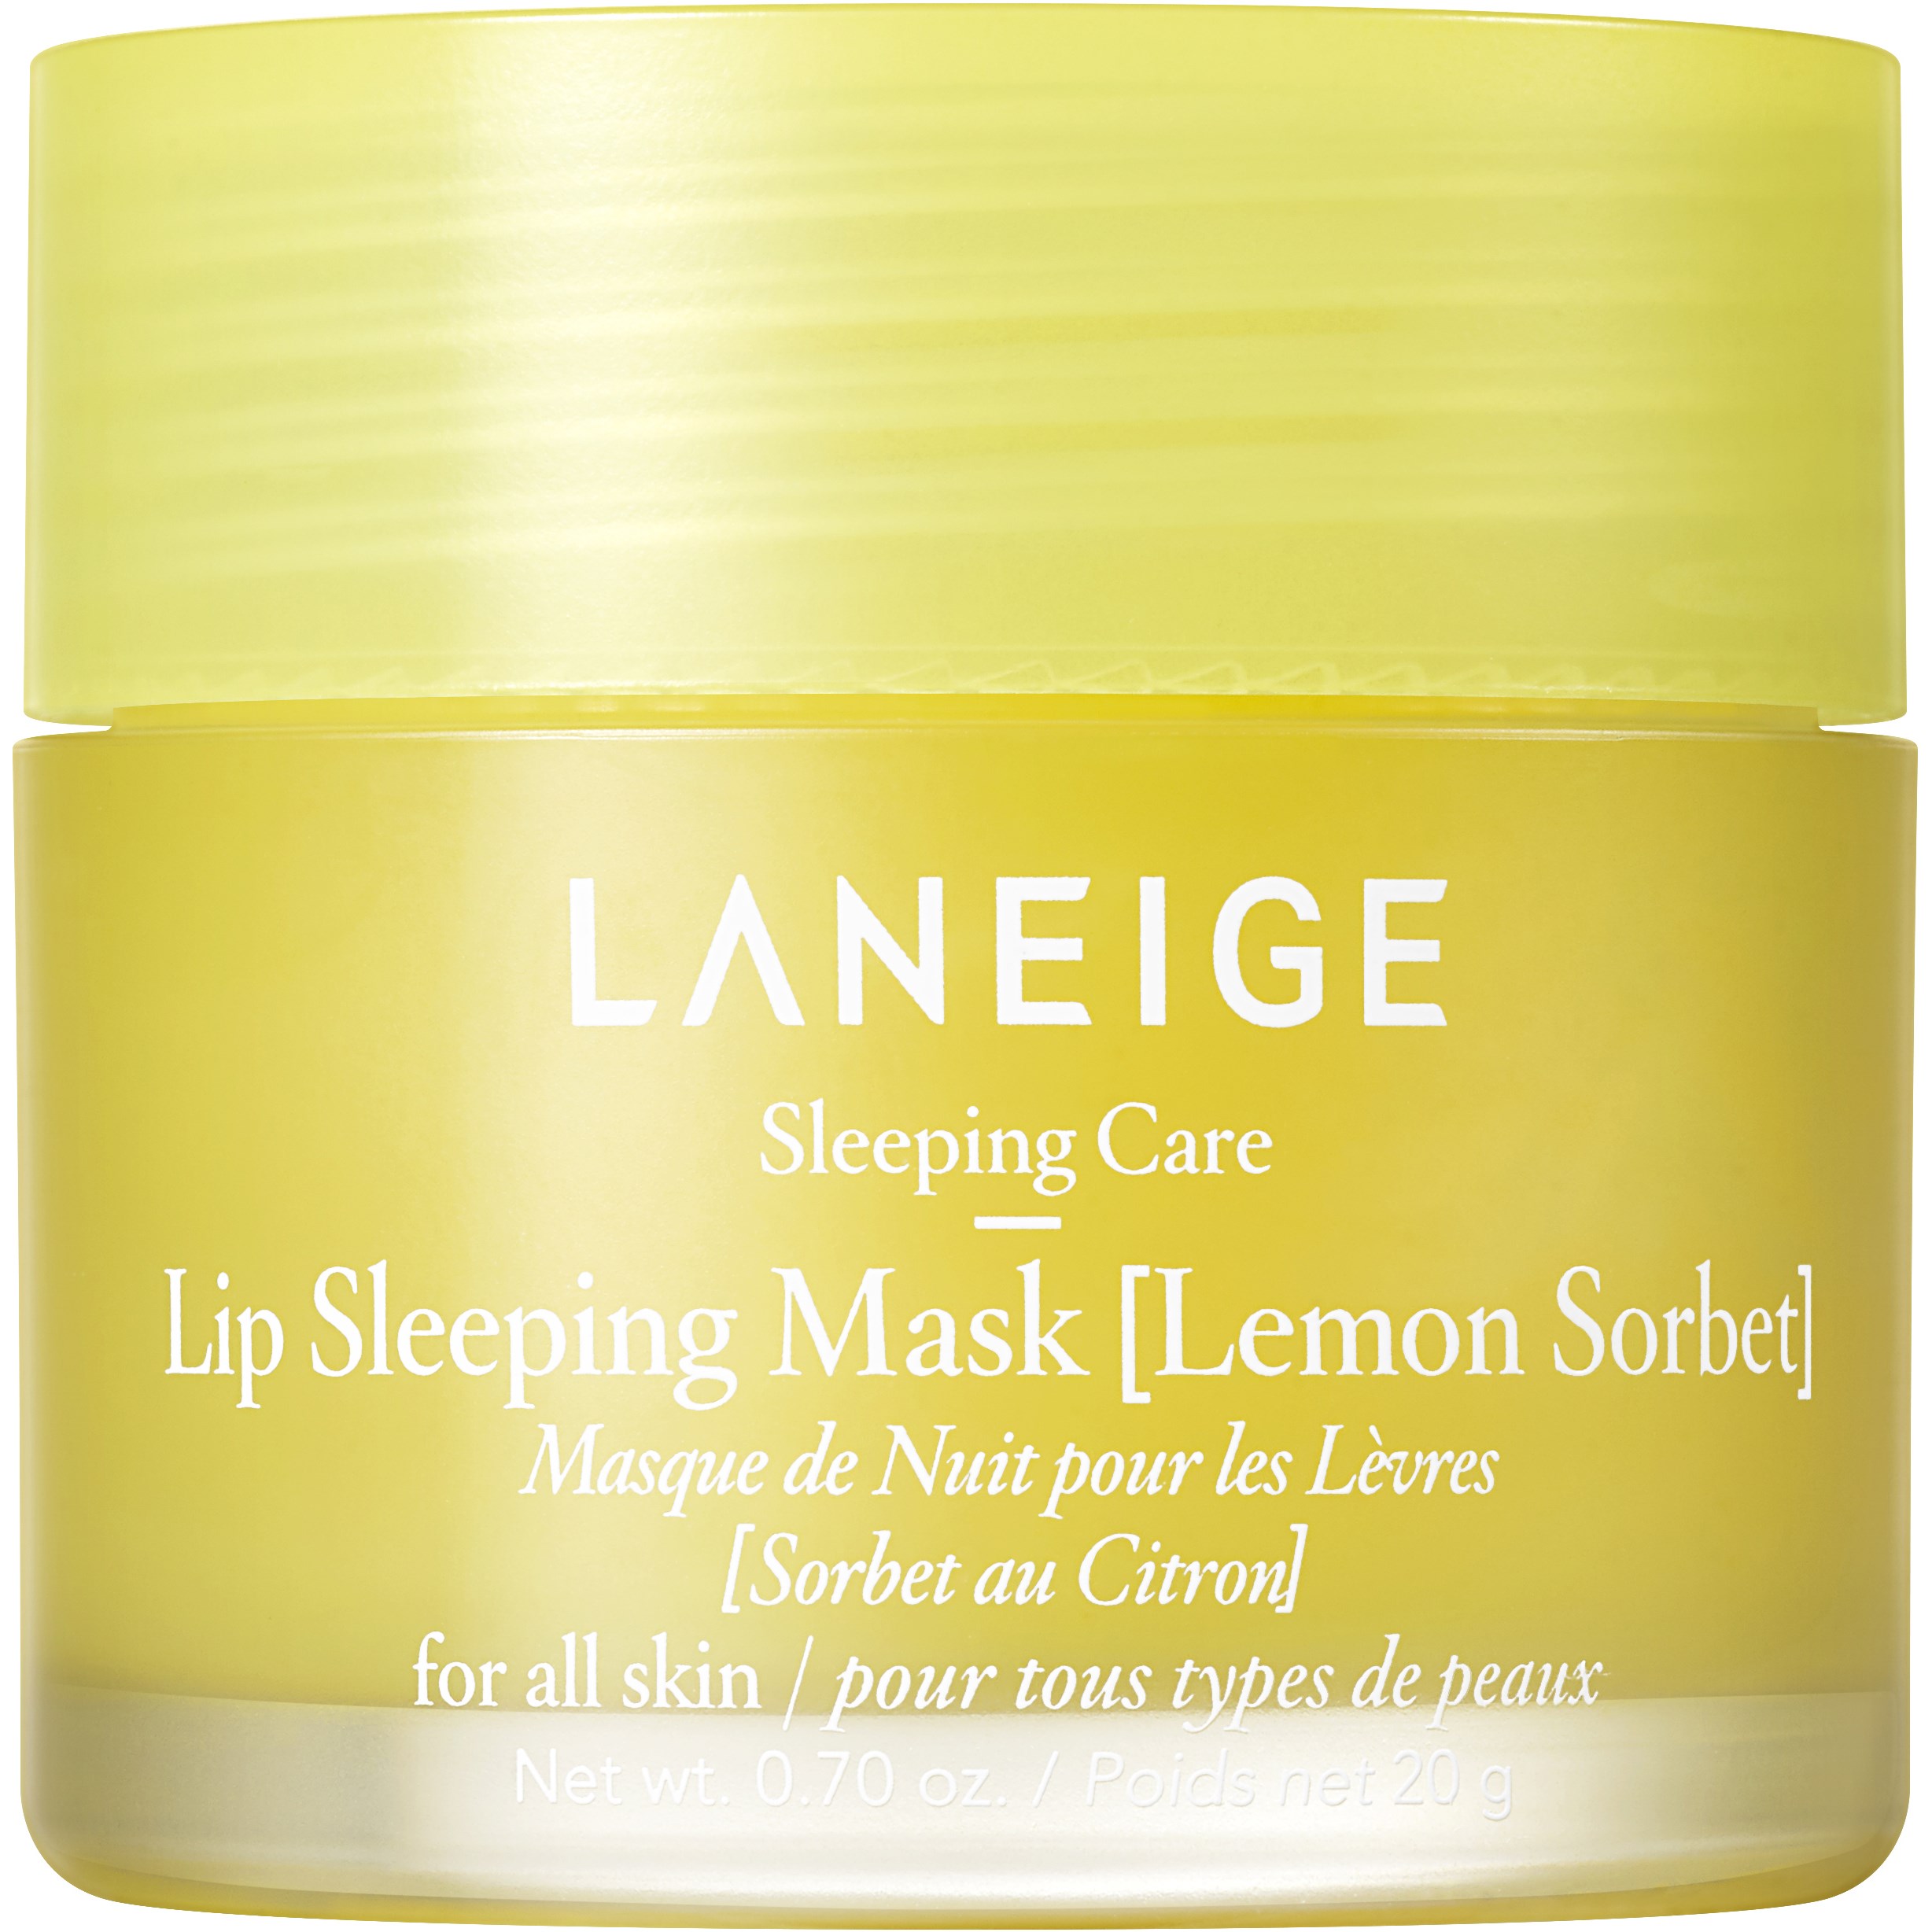 Bilde av Laneige Sleeping Care Lip Sleeping Mask Lemon Sorbet 20 G